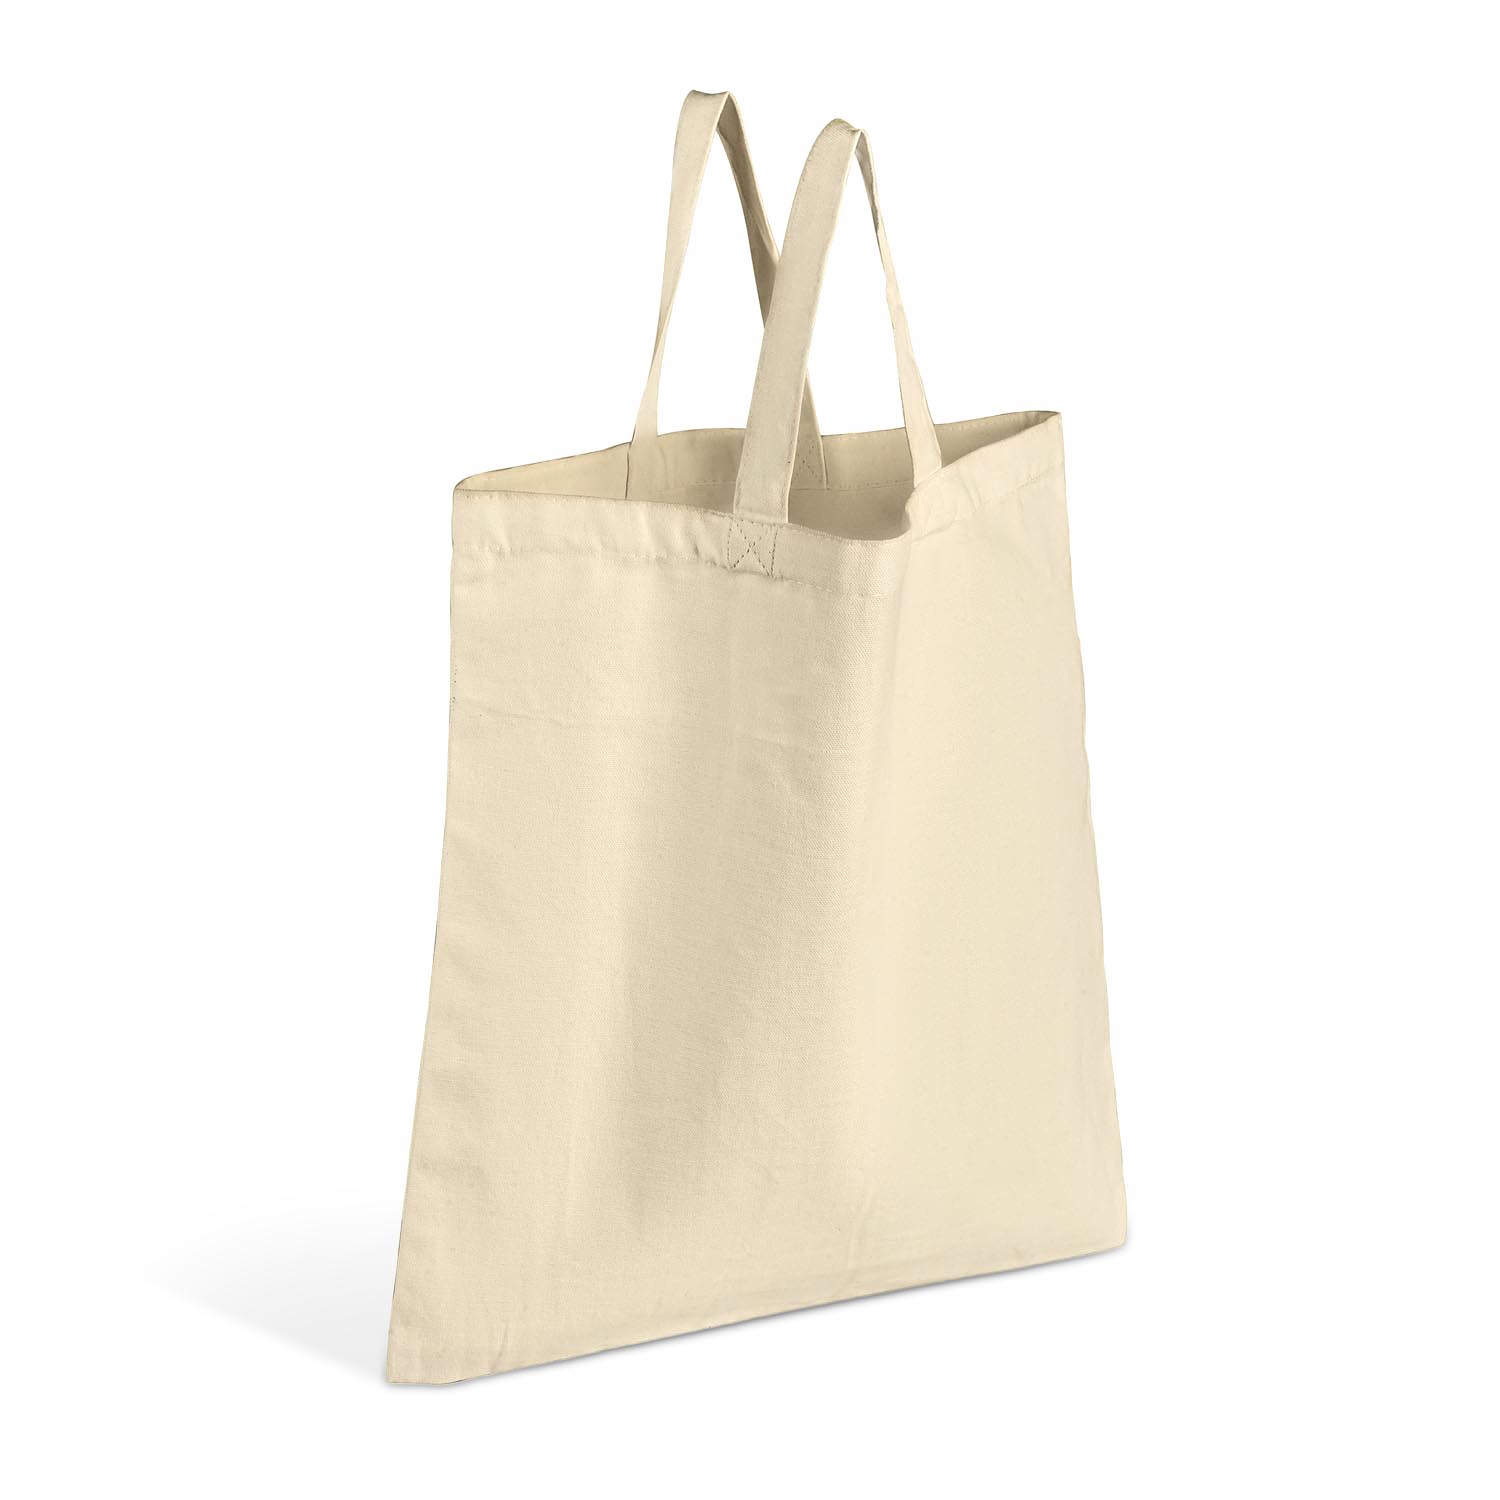 Splurge vs. Save: Minimalist Black Shoulder Bag | Shoulder bag outfit,  Black designer bags, Black shoulder bag